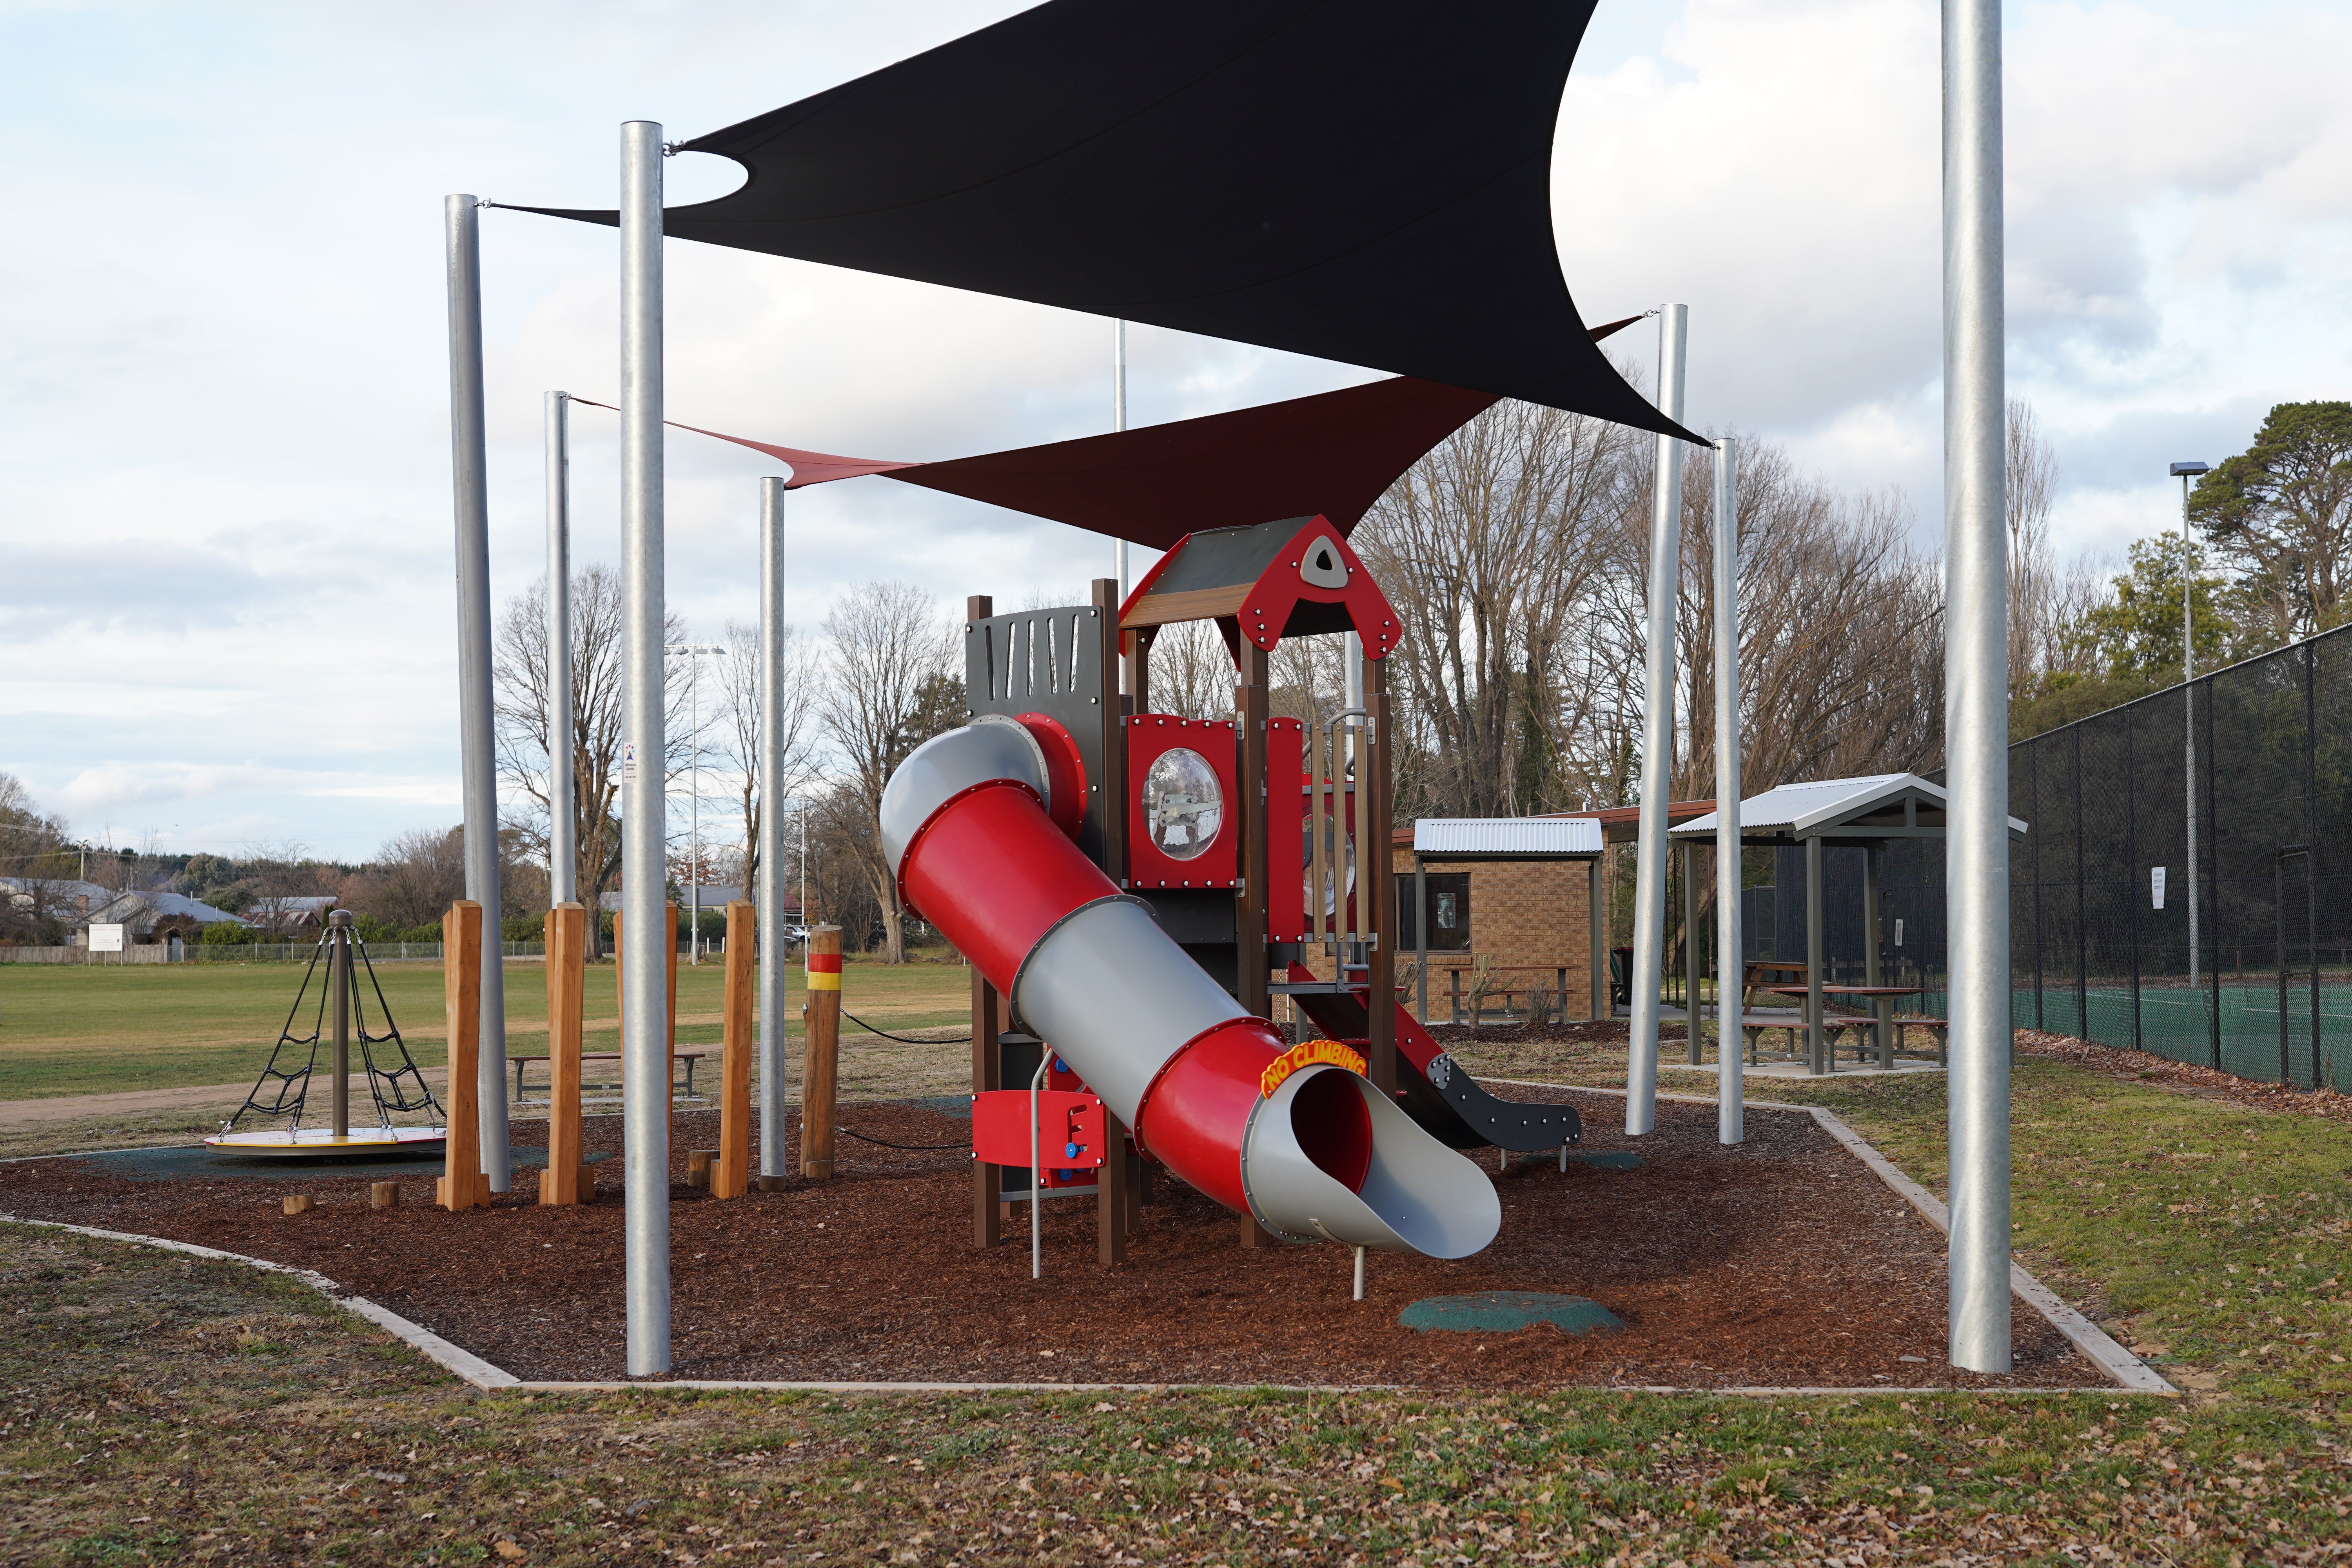 Braidwood Recreation Grounds and Playground - Accommodation Mount Tamborine